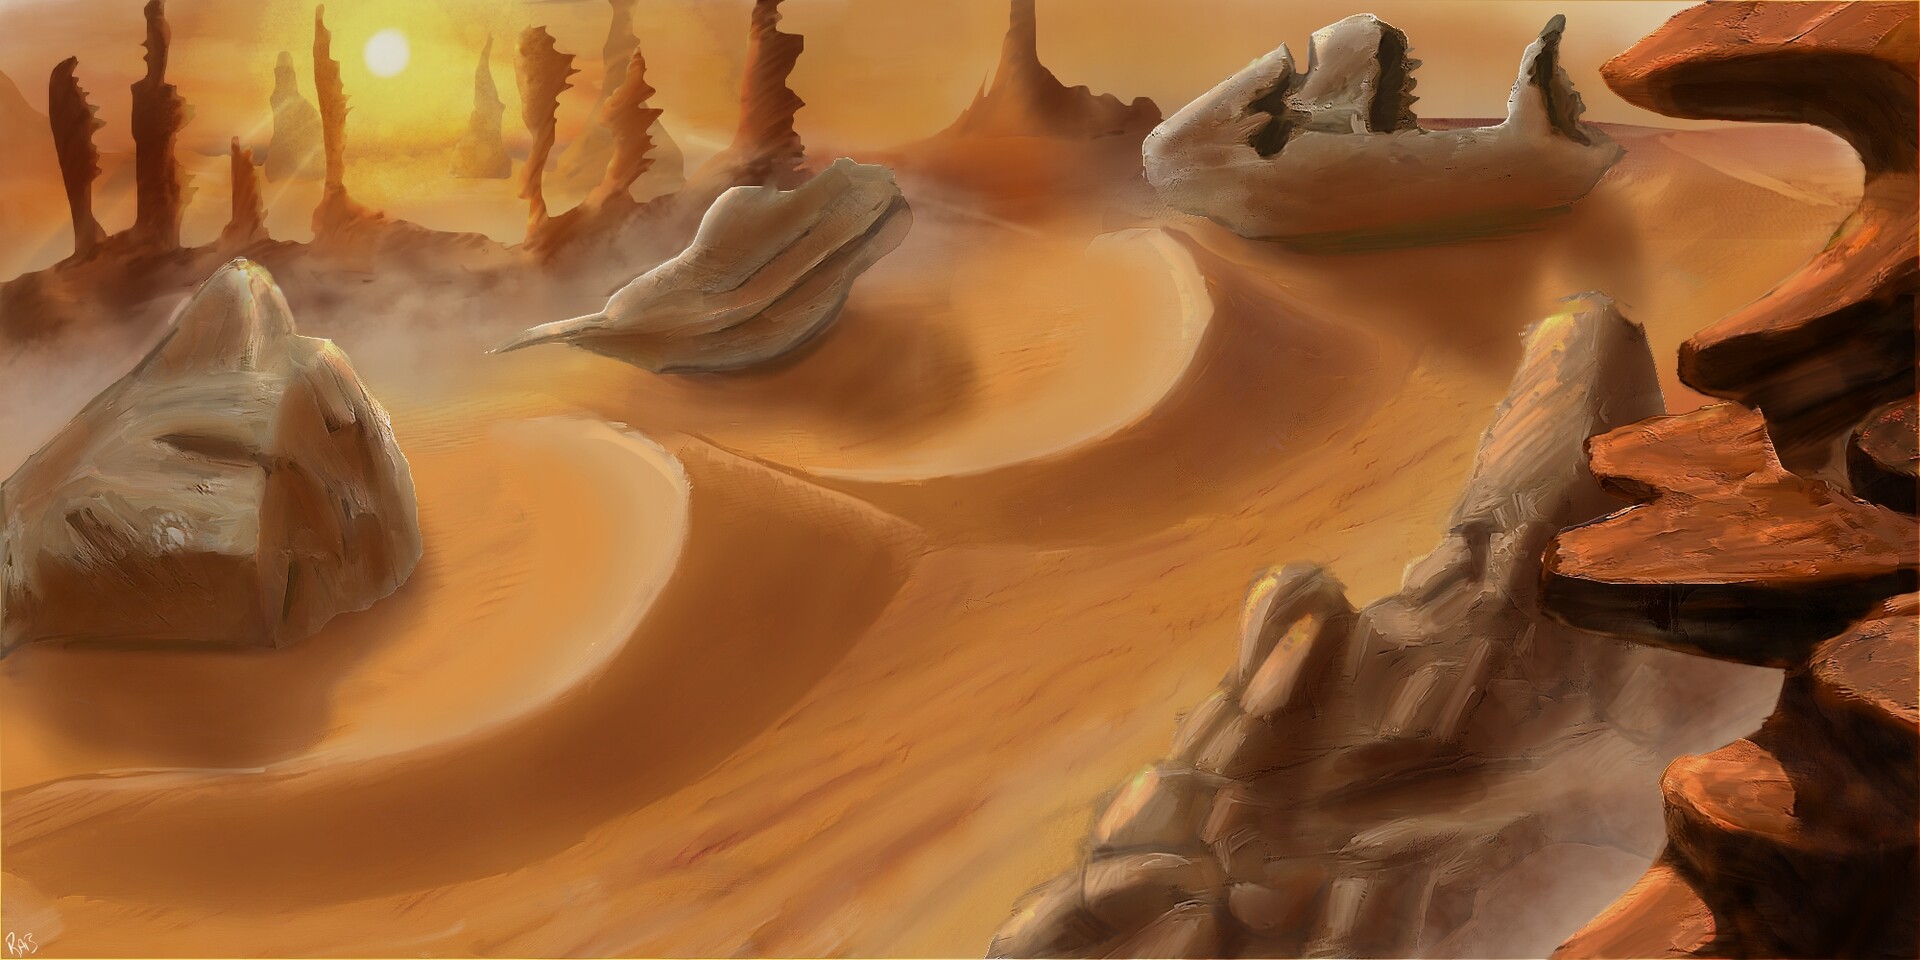 barren desert wasteland